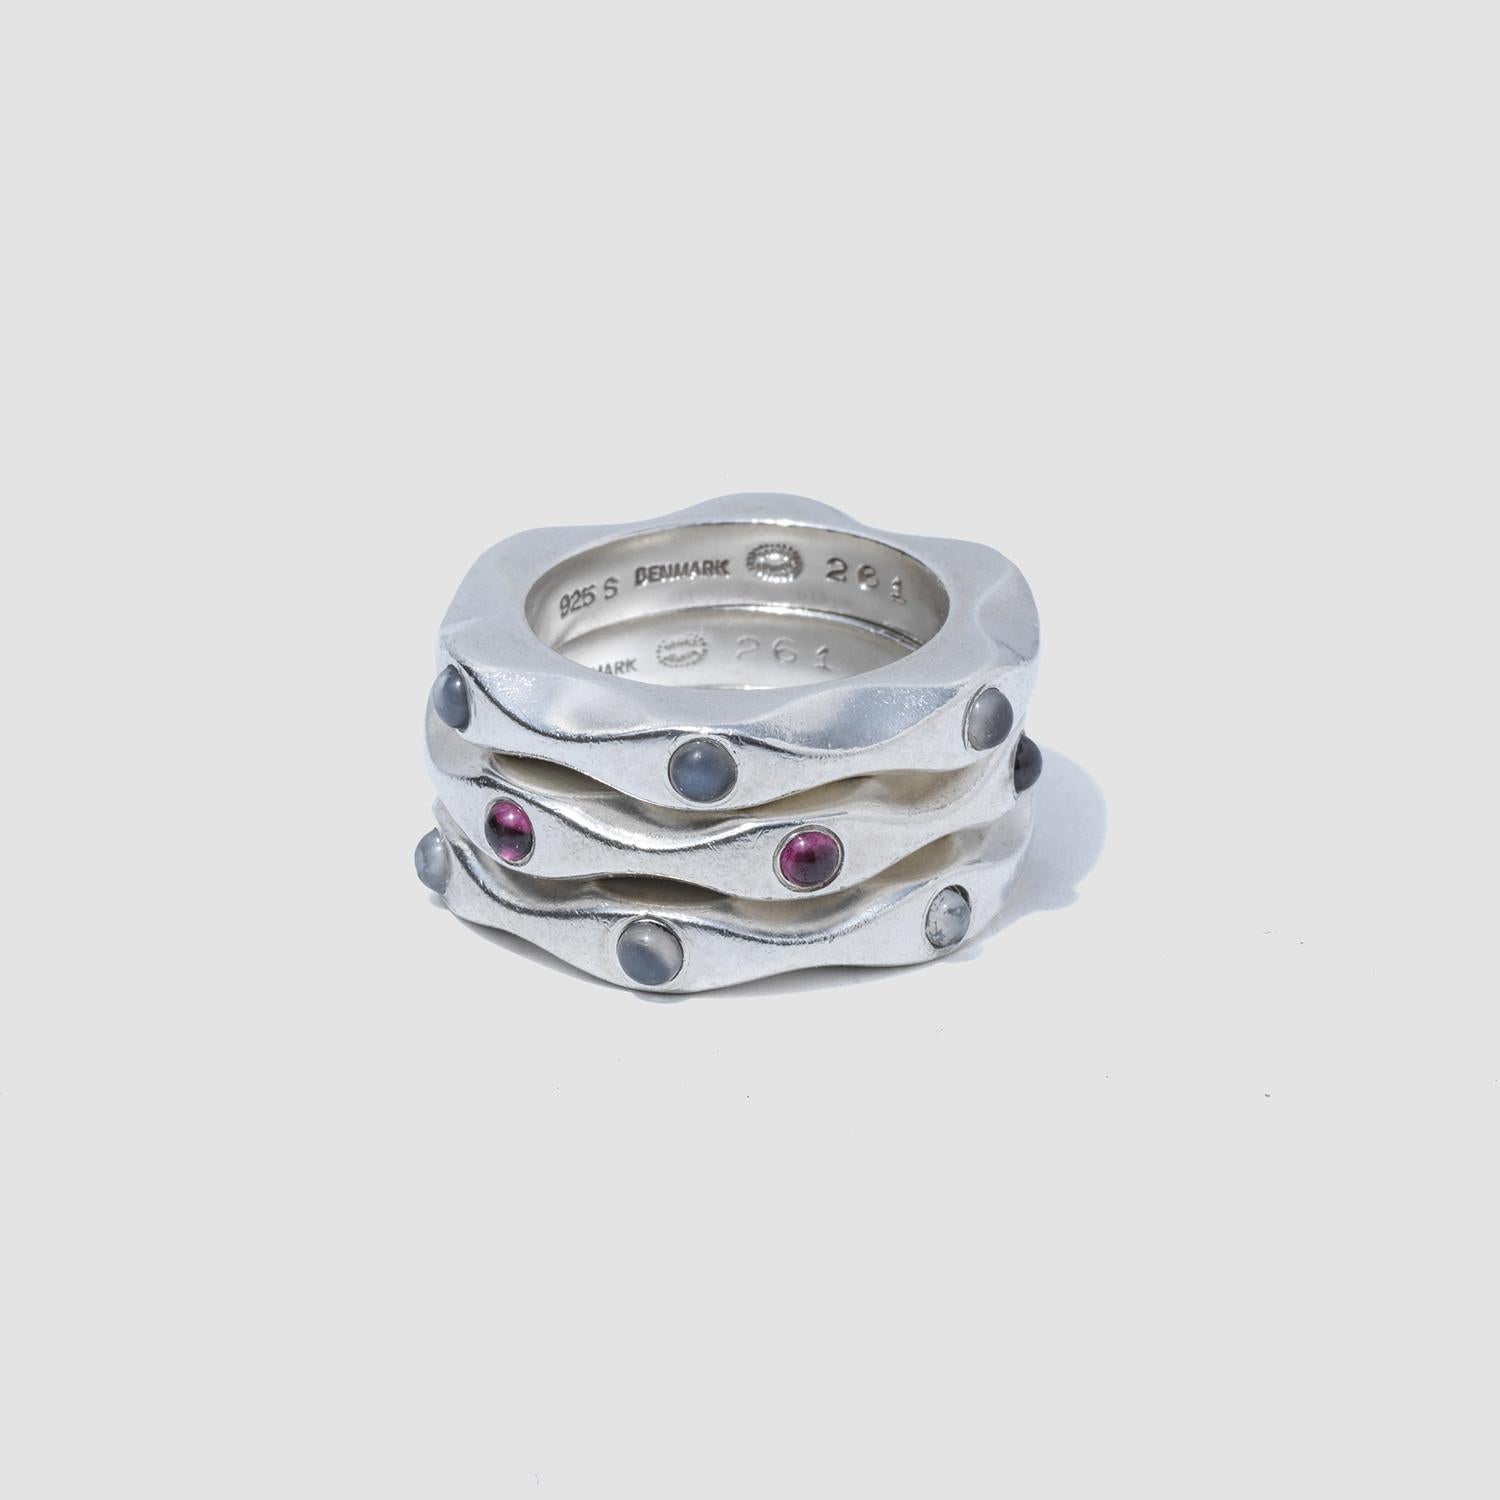 Diese Ringe aus Sterlingsilber sind eine zeitgemäße Interpretation des klassischen Stils. Einer der Ringe ist mit drei Granaten im Cabochon-Schliff verziert, die beiden anderen mit drei Mondsteinen, die sich elegant in das fließende Design einfügen.